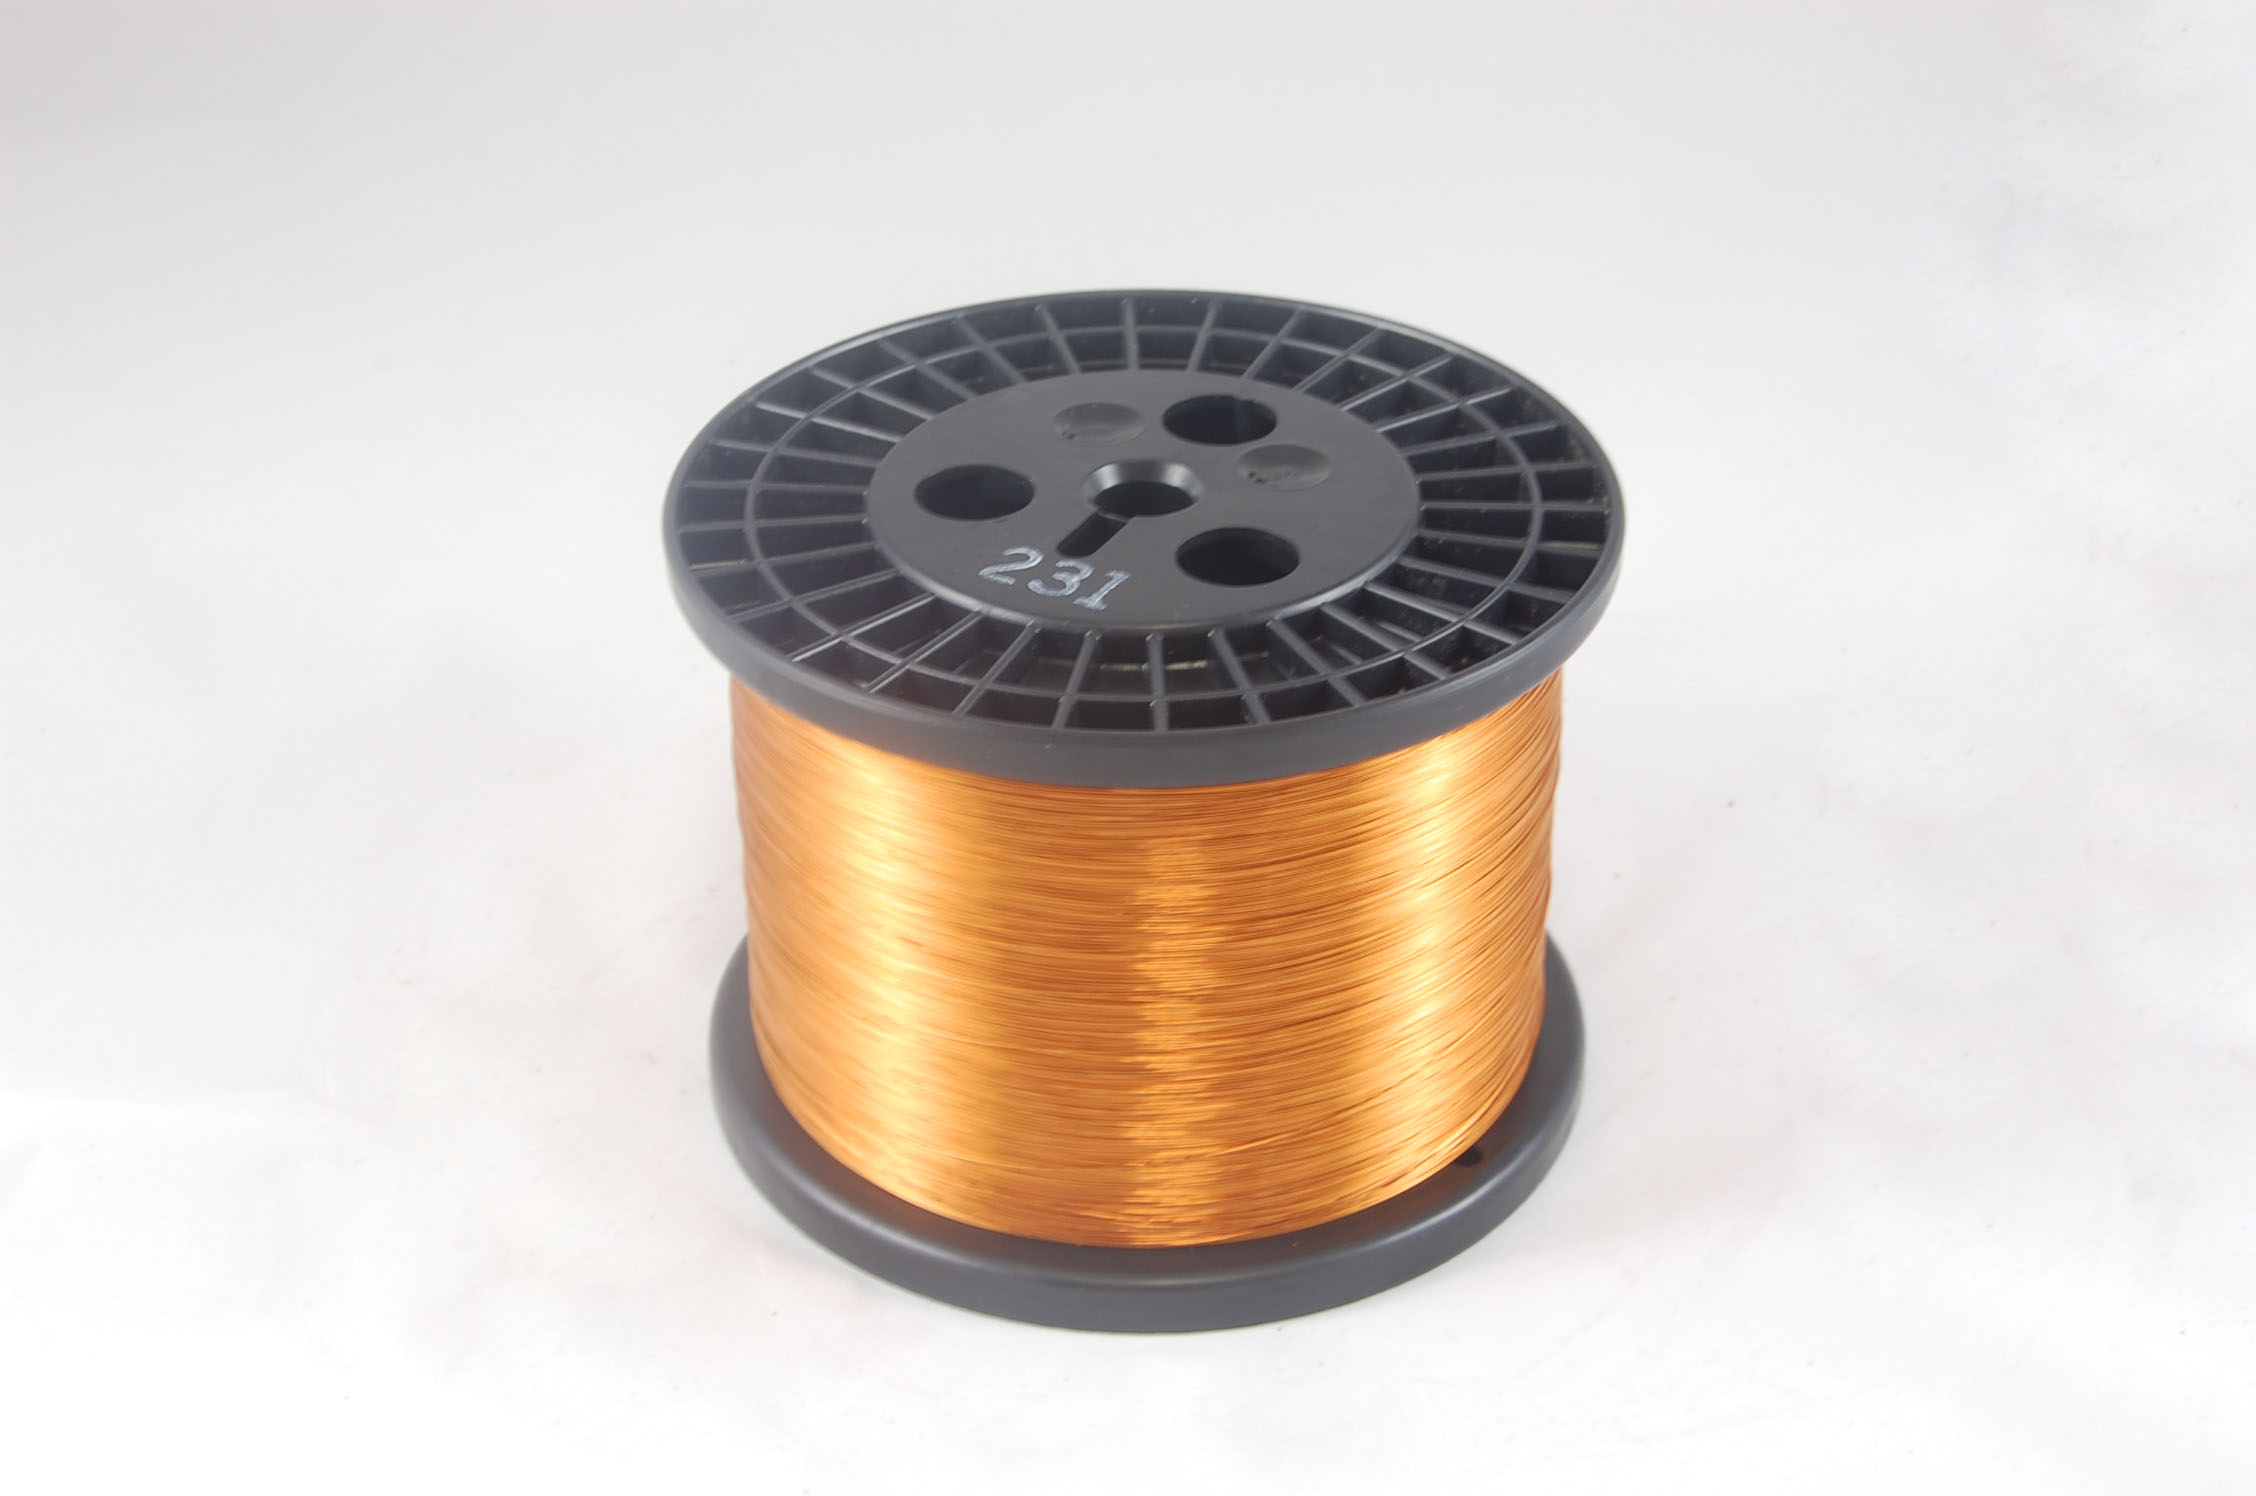 #18 Heavy GP/MR-200 Round MW 35 Copper Magnet Wire 200°C, copper, 10 LB 6" spool (average wght.)